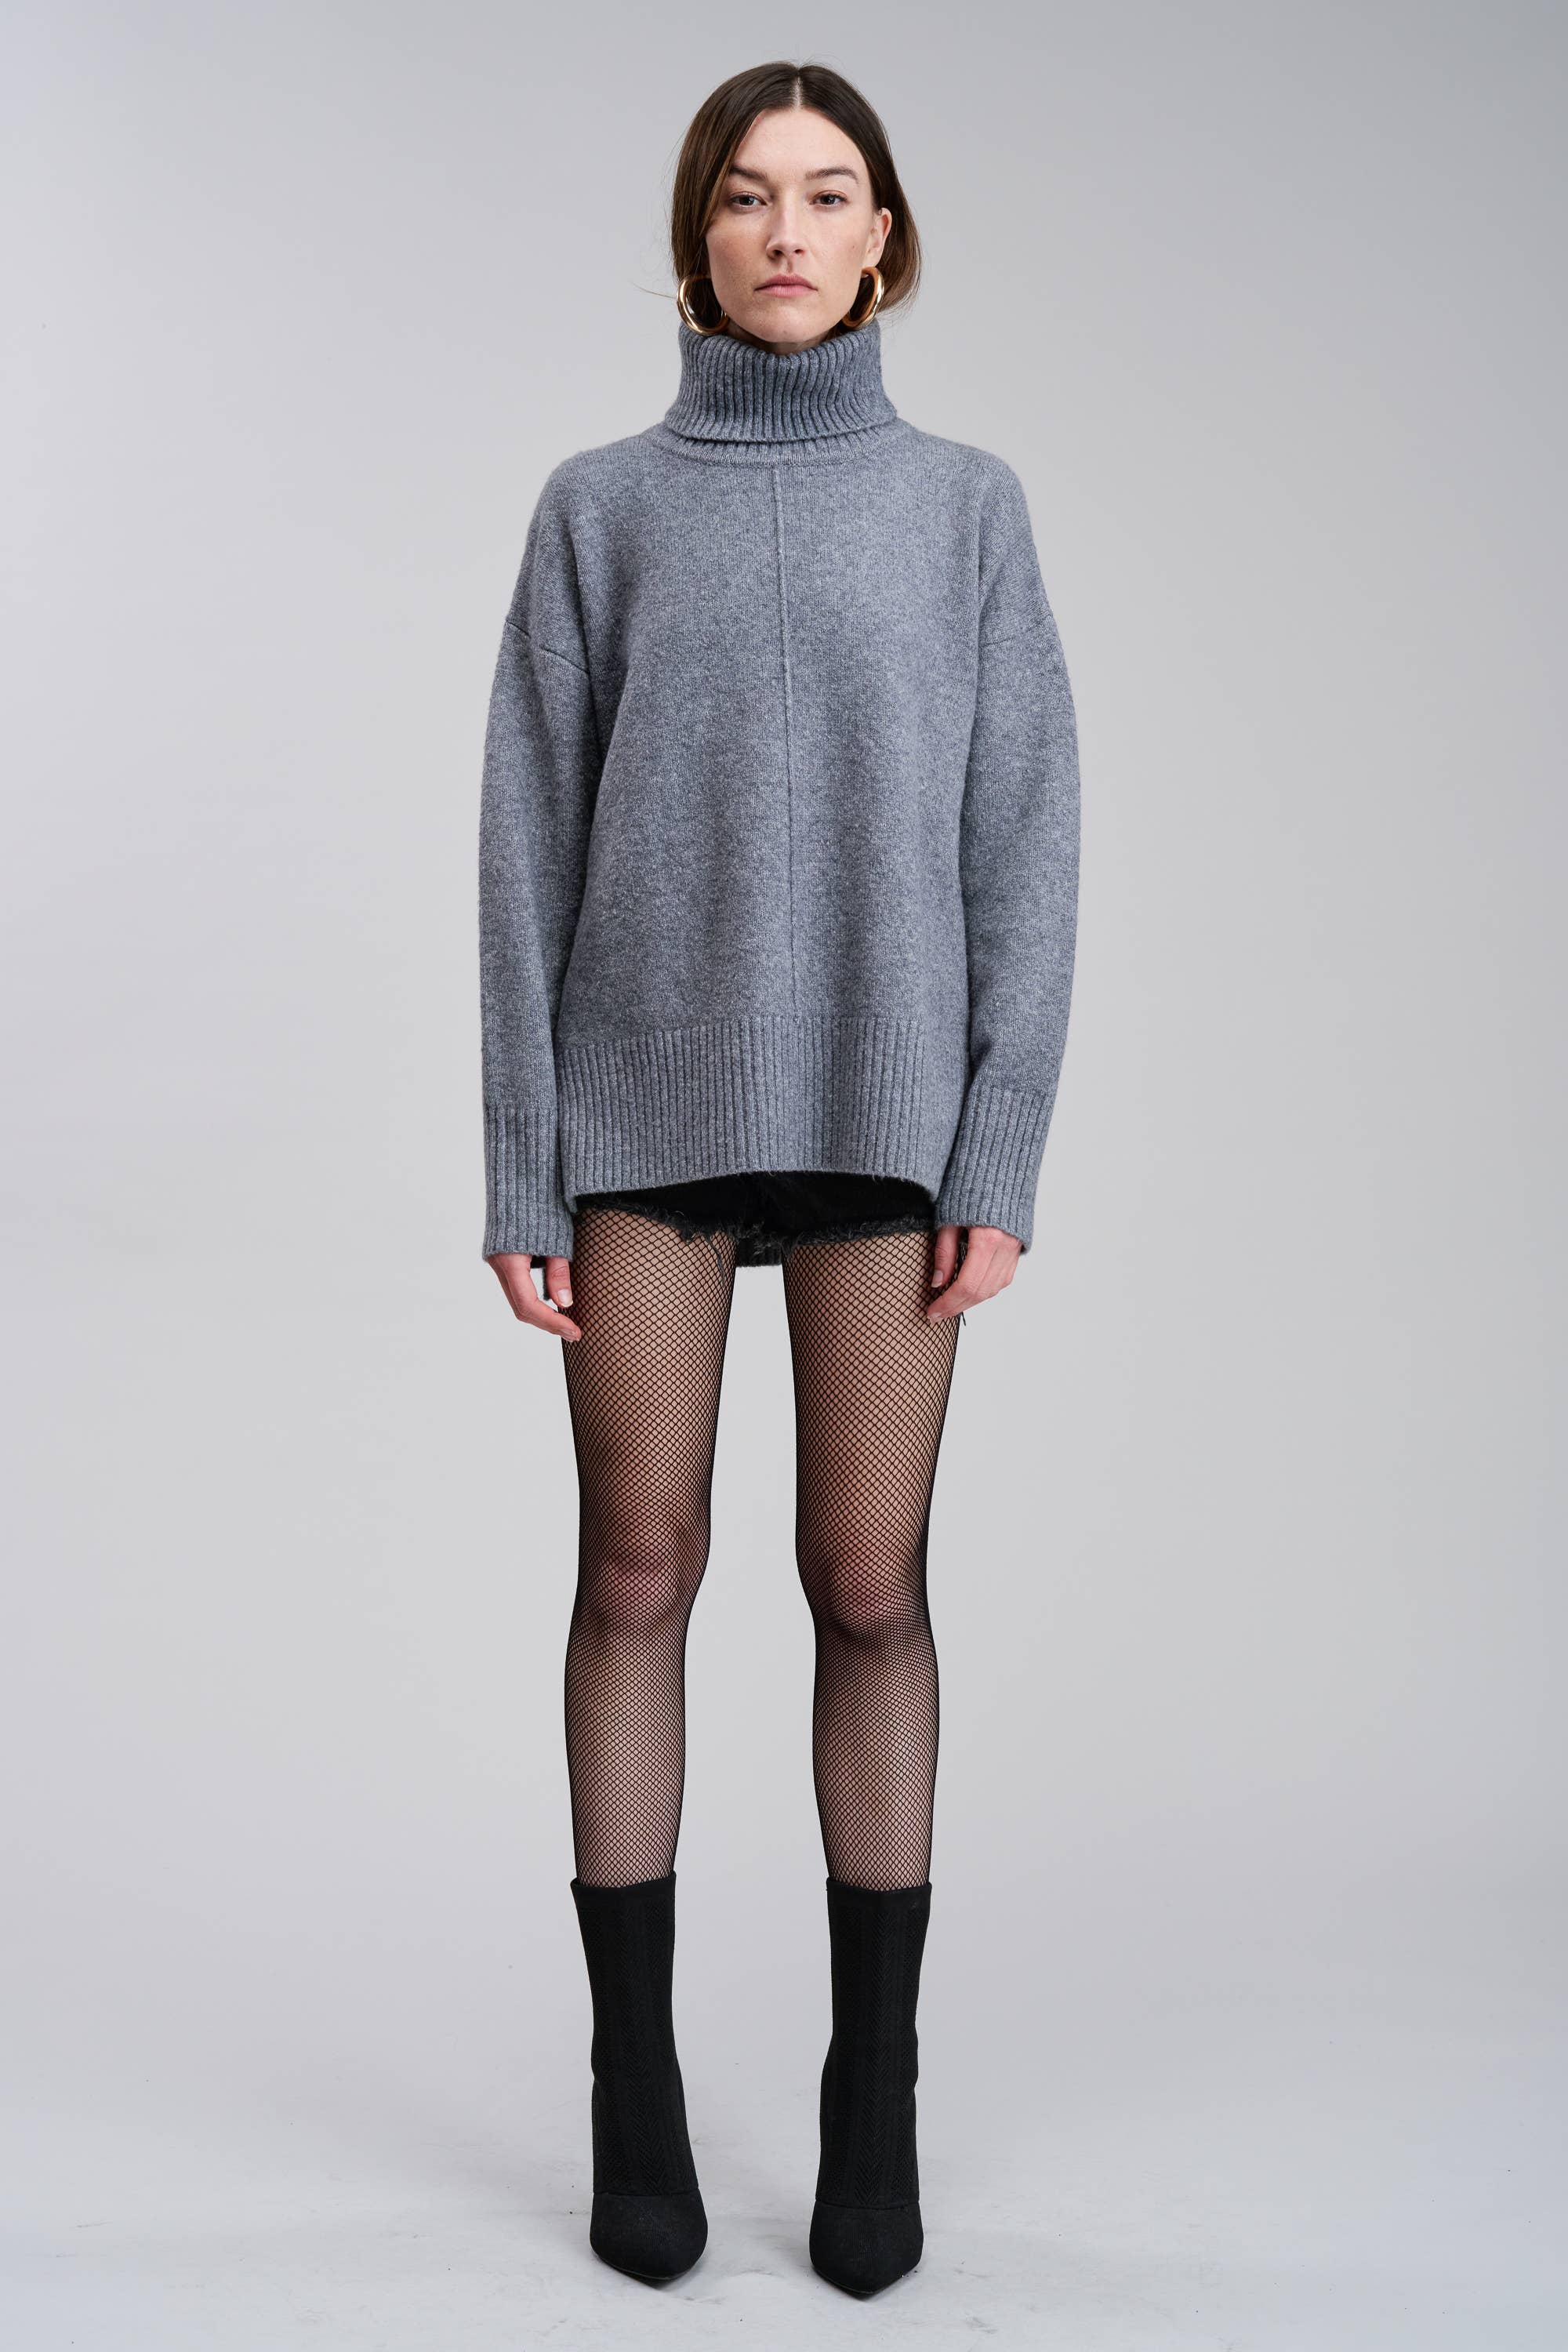 Morienne Sweater in Grey